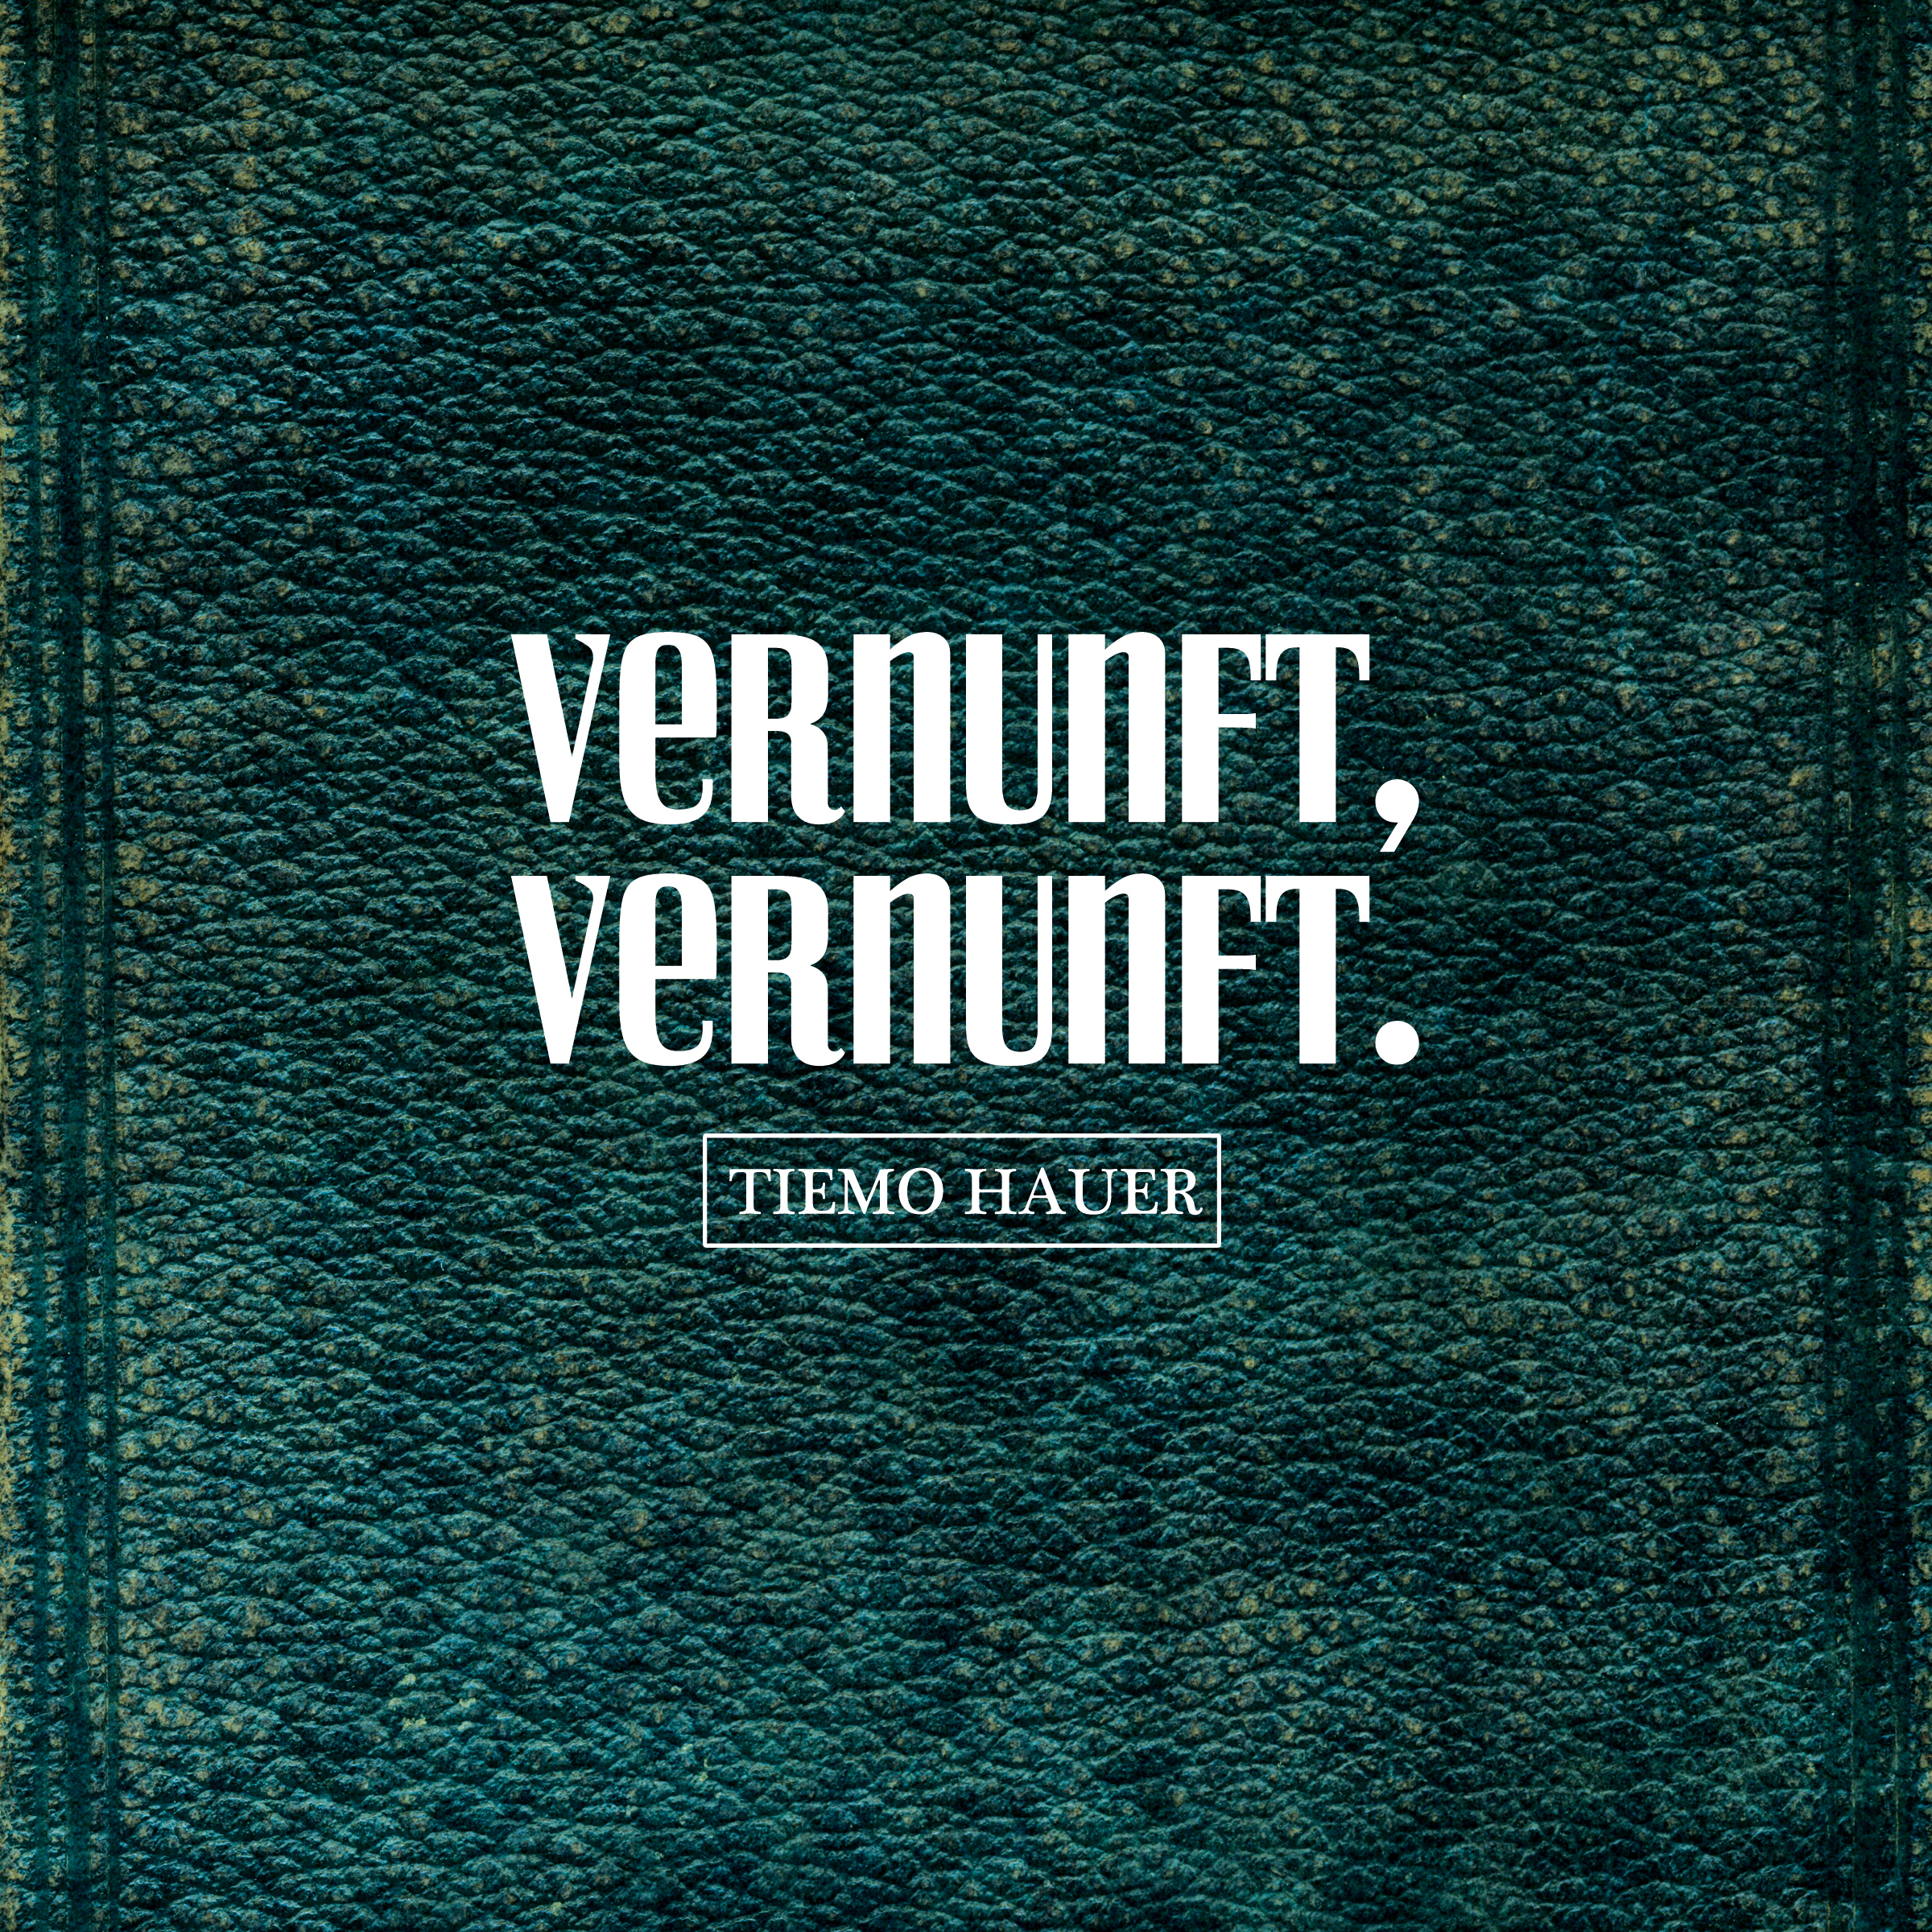 (Vinyl) - - VERNUNFT. VERNUNFT, Tiemo Hauer